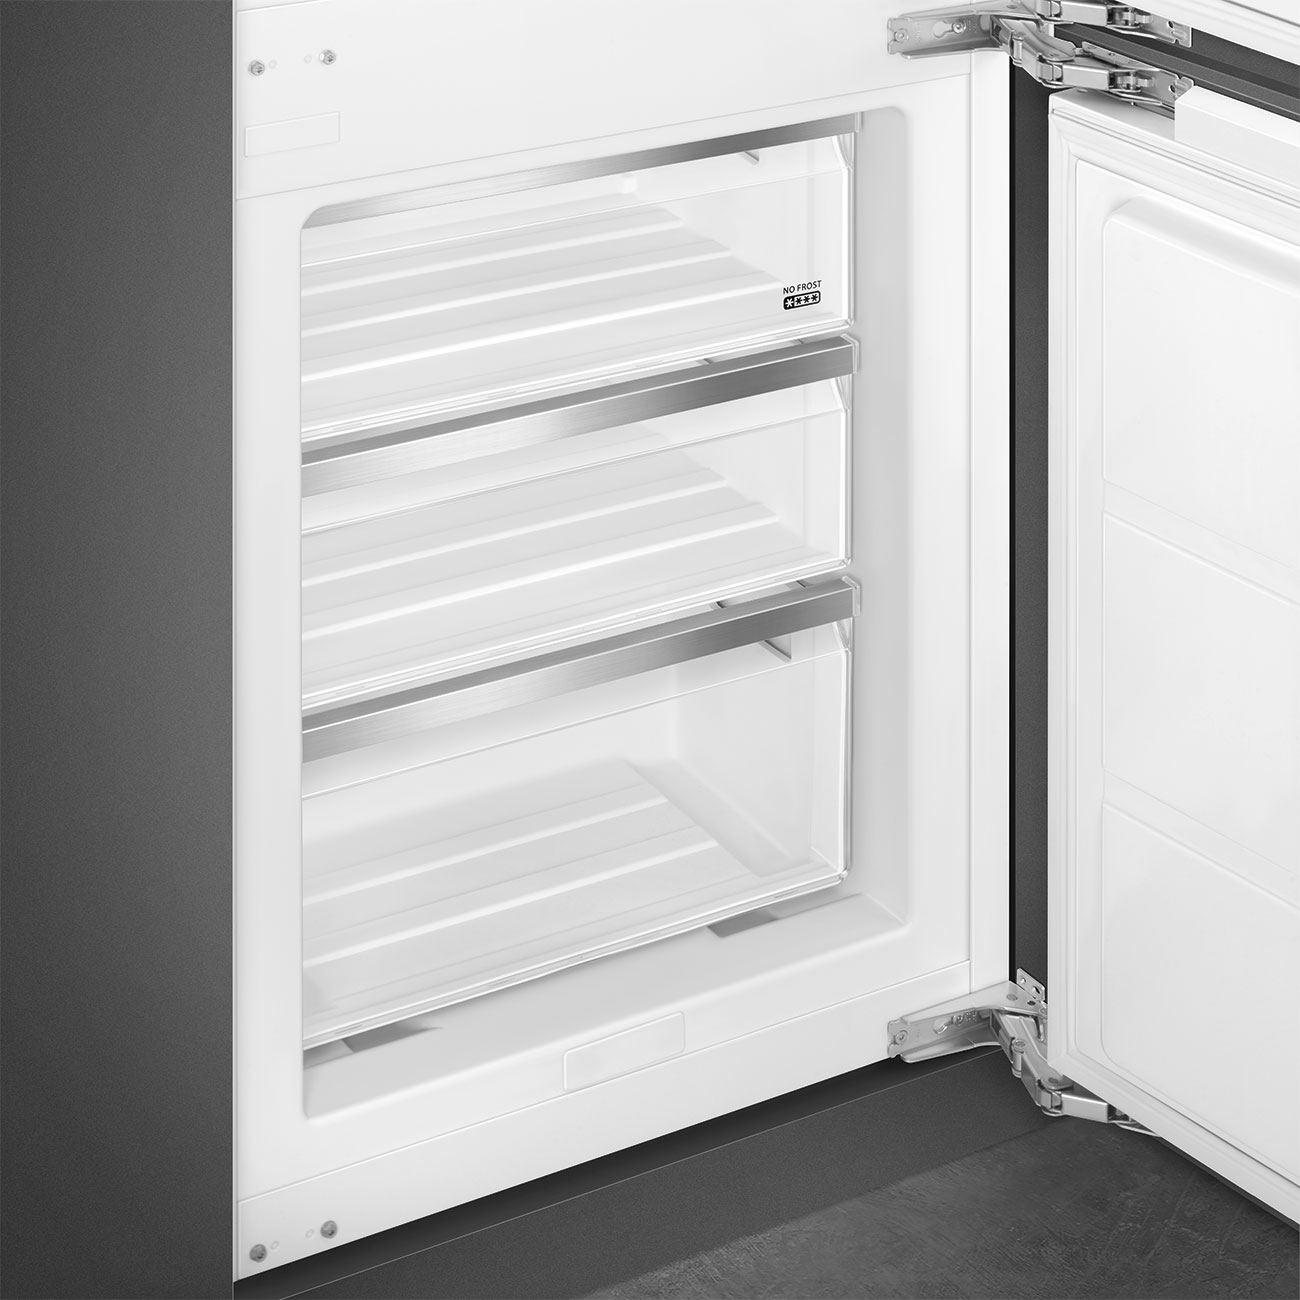 Koel-vriescombinatie Inbouw koelkast- Smeg_4